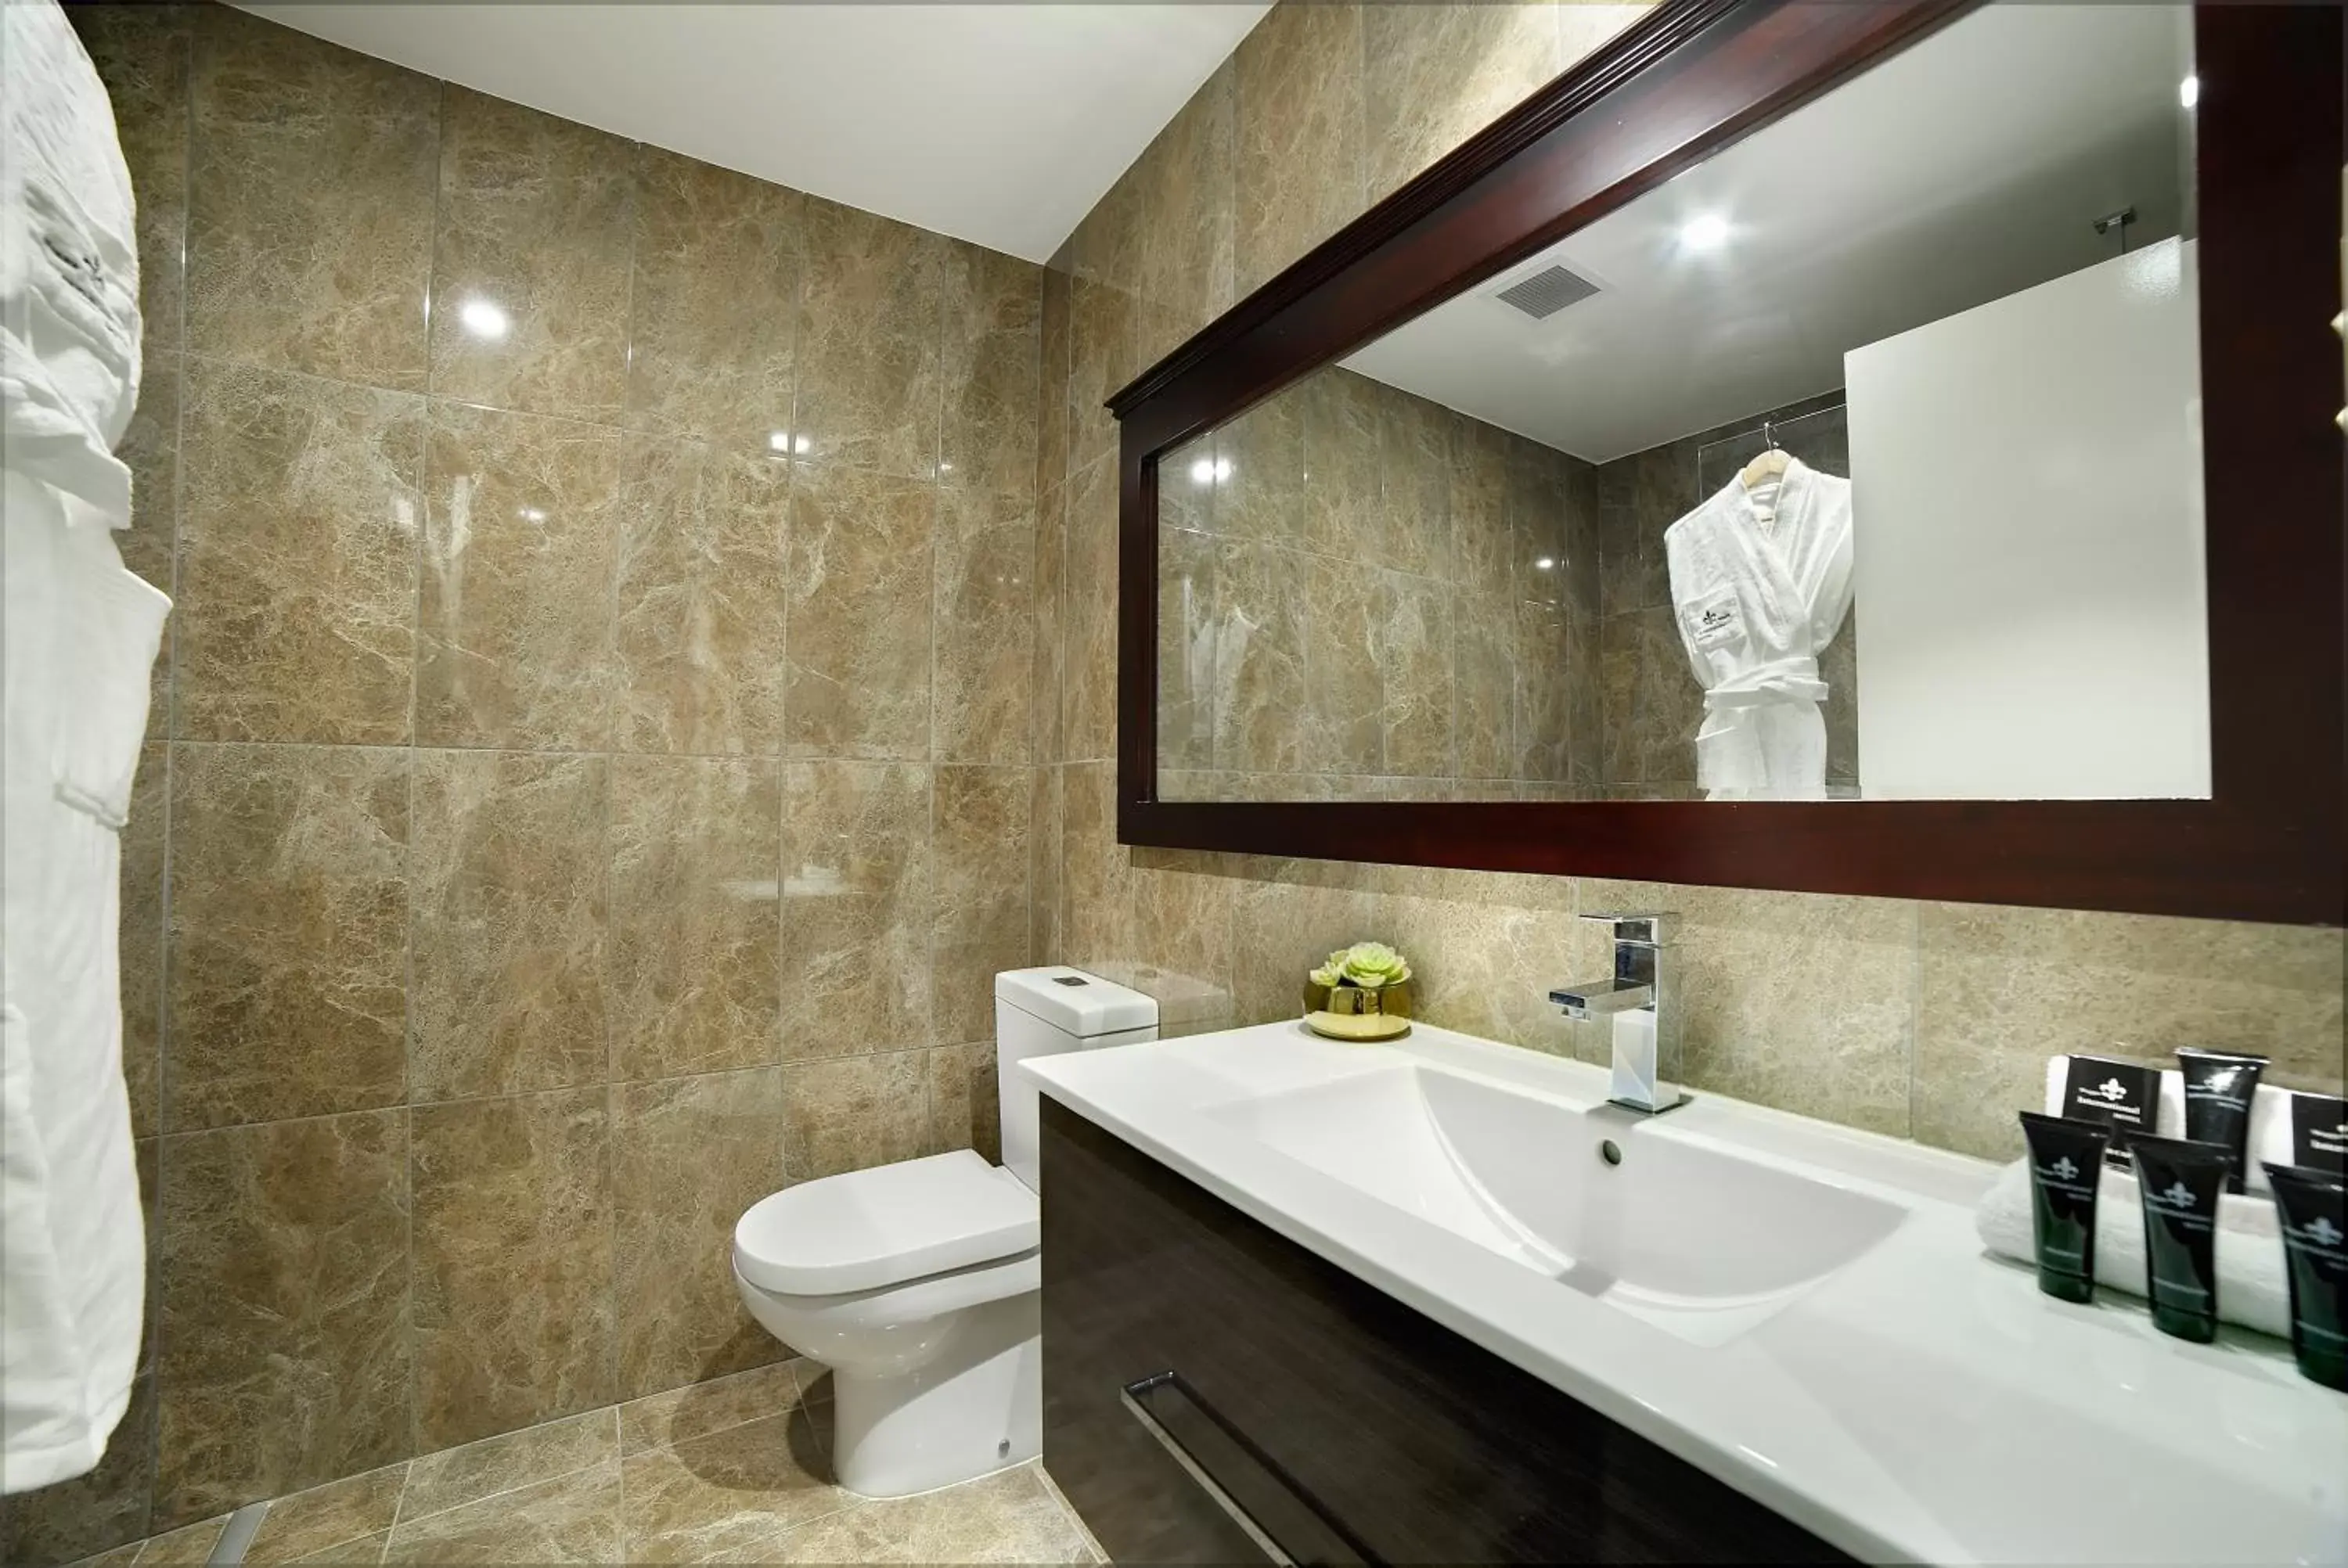 Bathroom in International Hotel Wagga Wagga